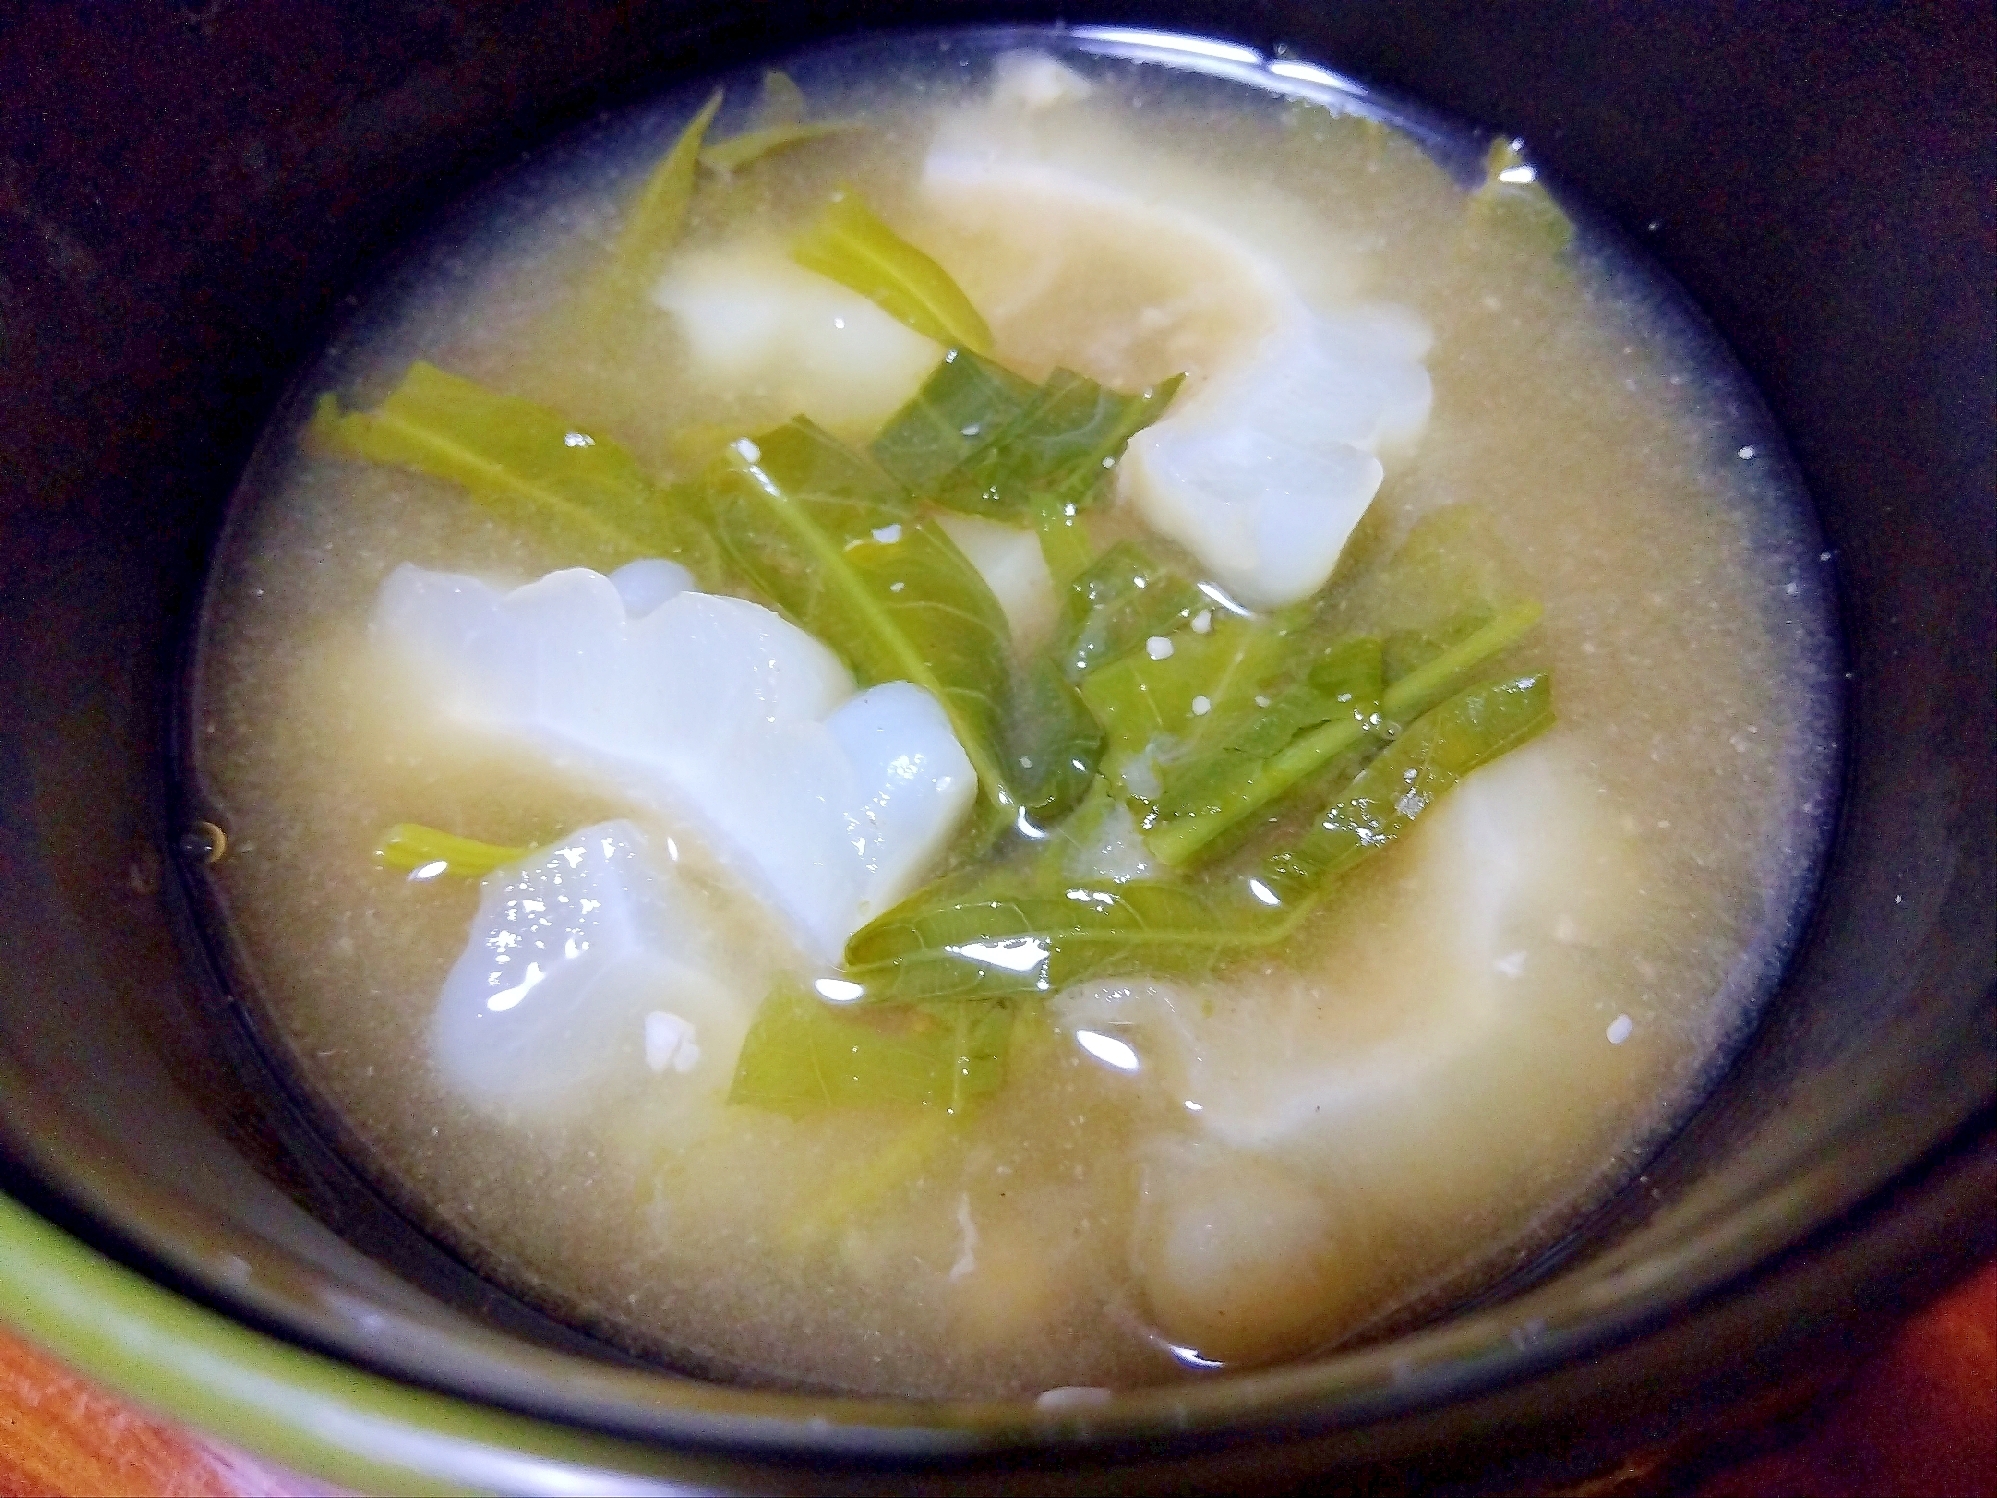 白ゴーヤ&空芯菜の味噌汁